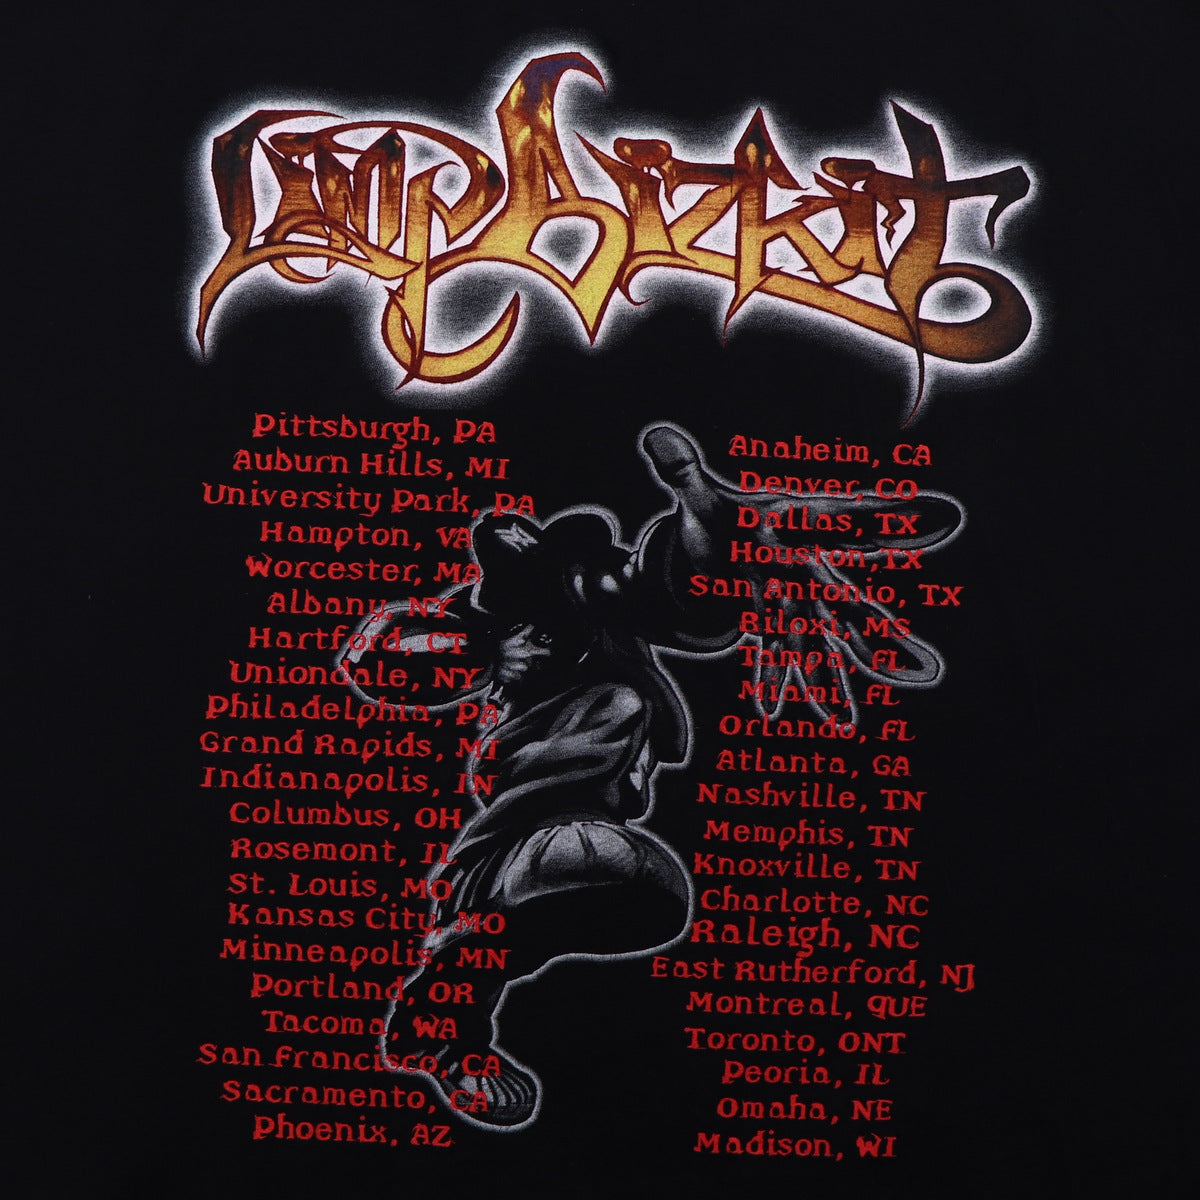 1999 Limp Bizkit Significant Other Tour Shirt